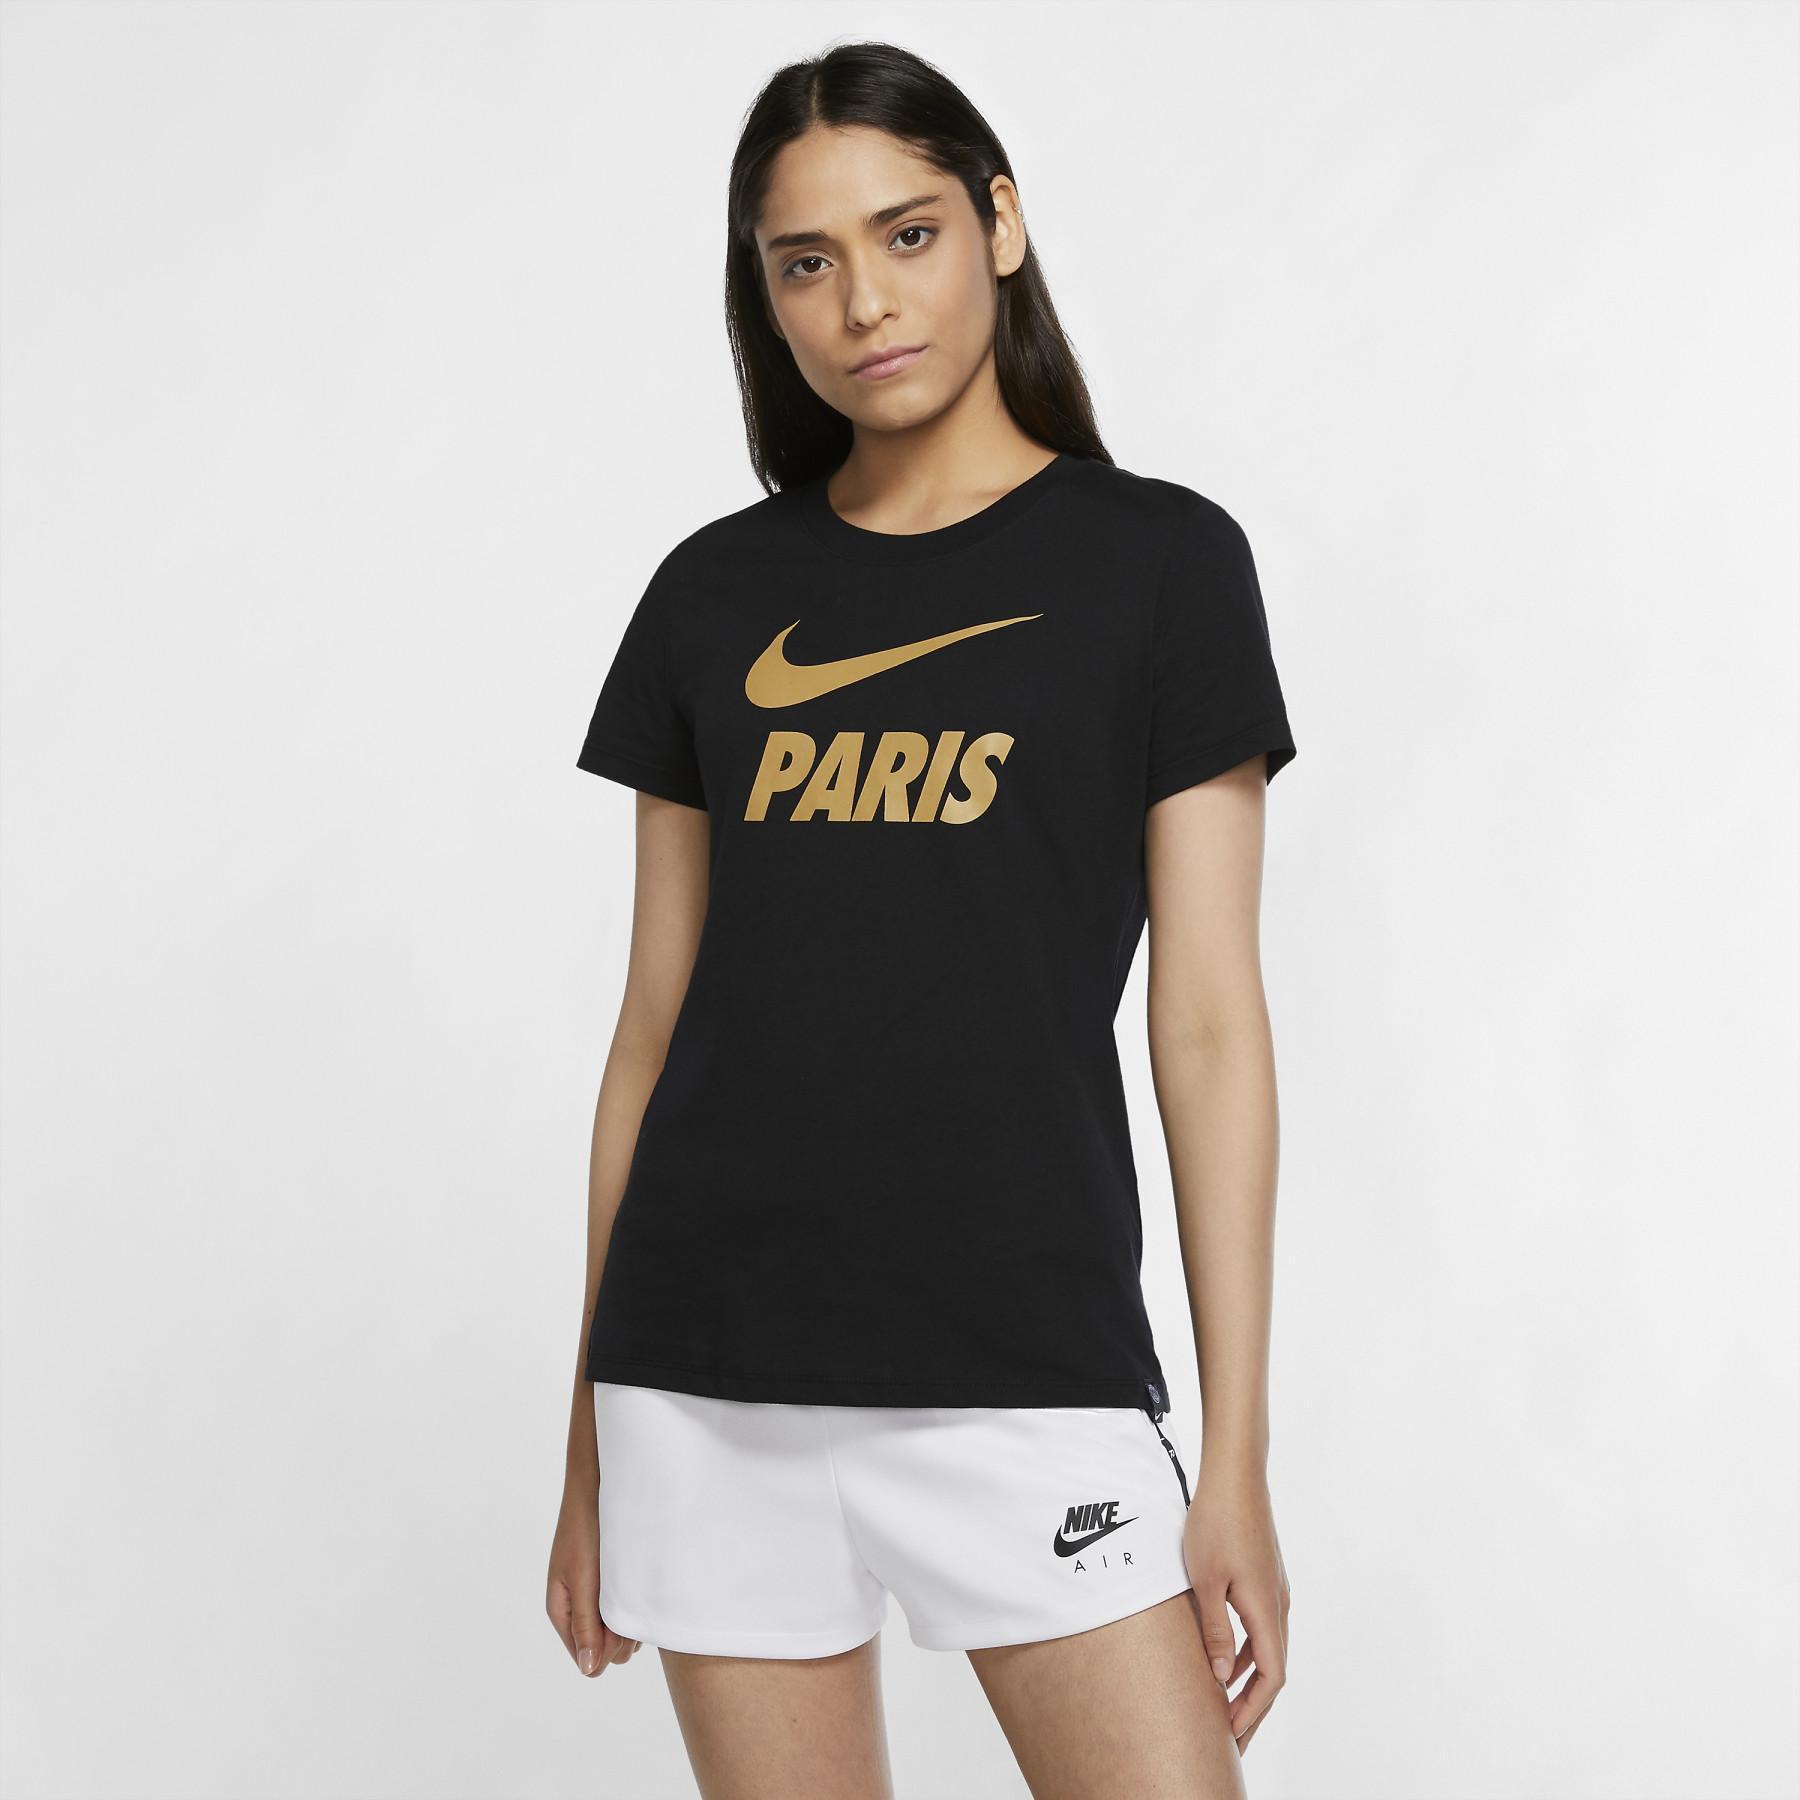 Camiseta feminina PSG coton 2020/21